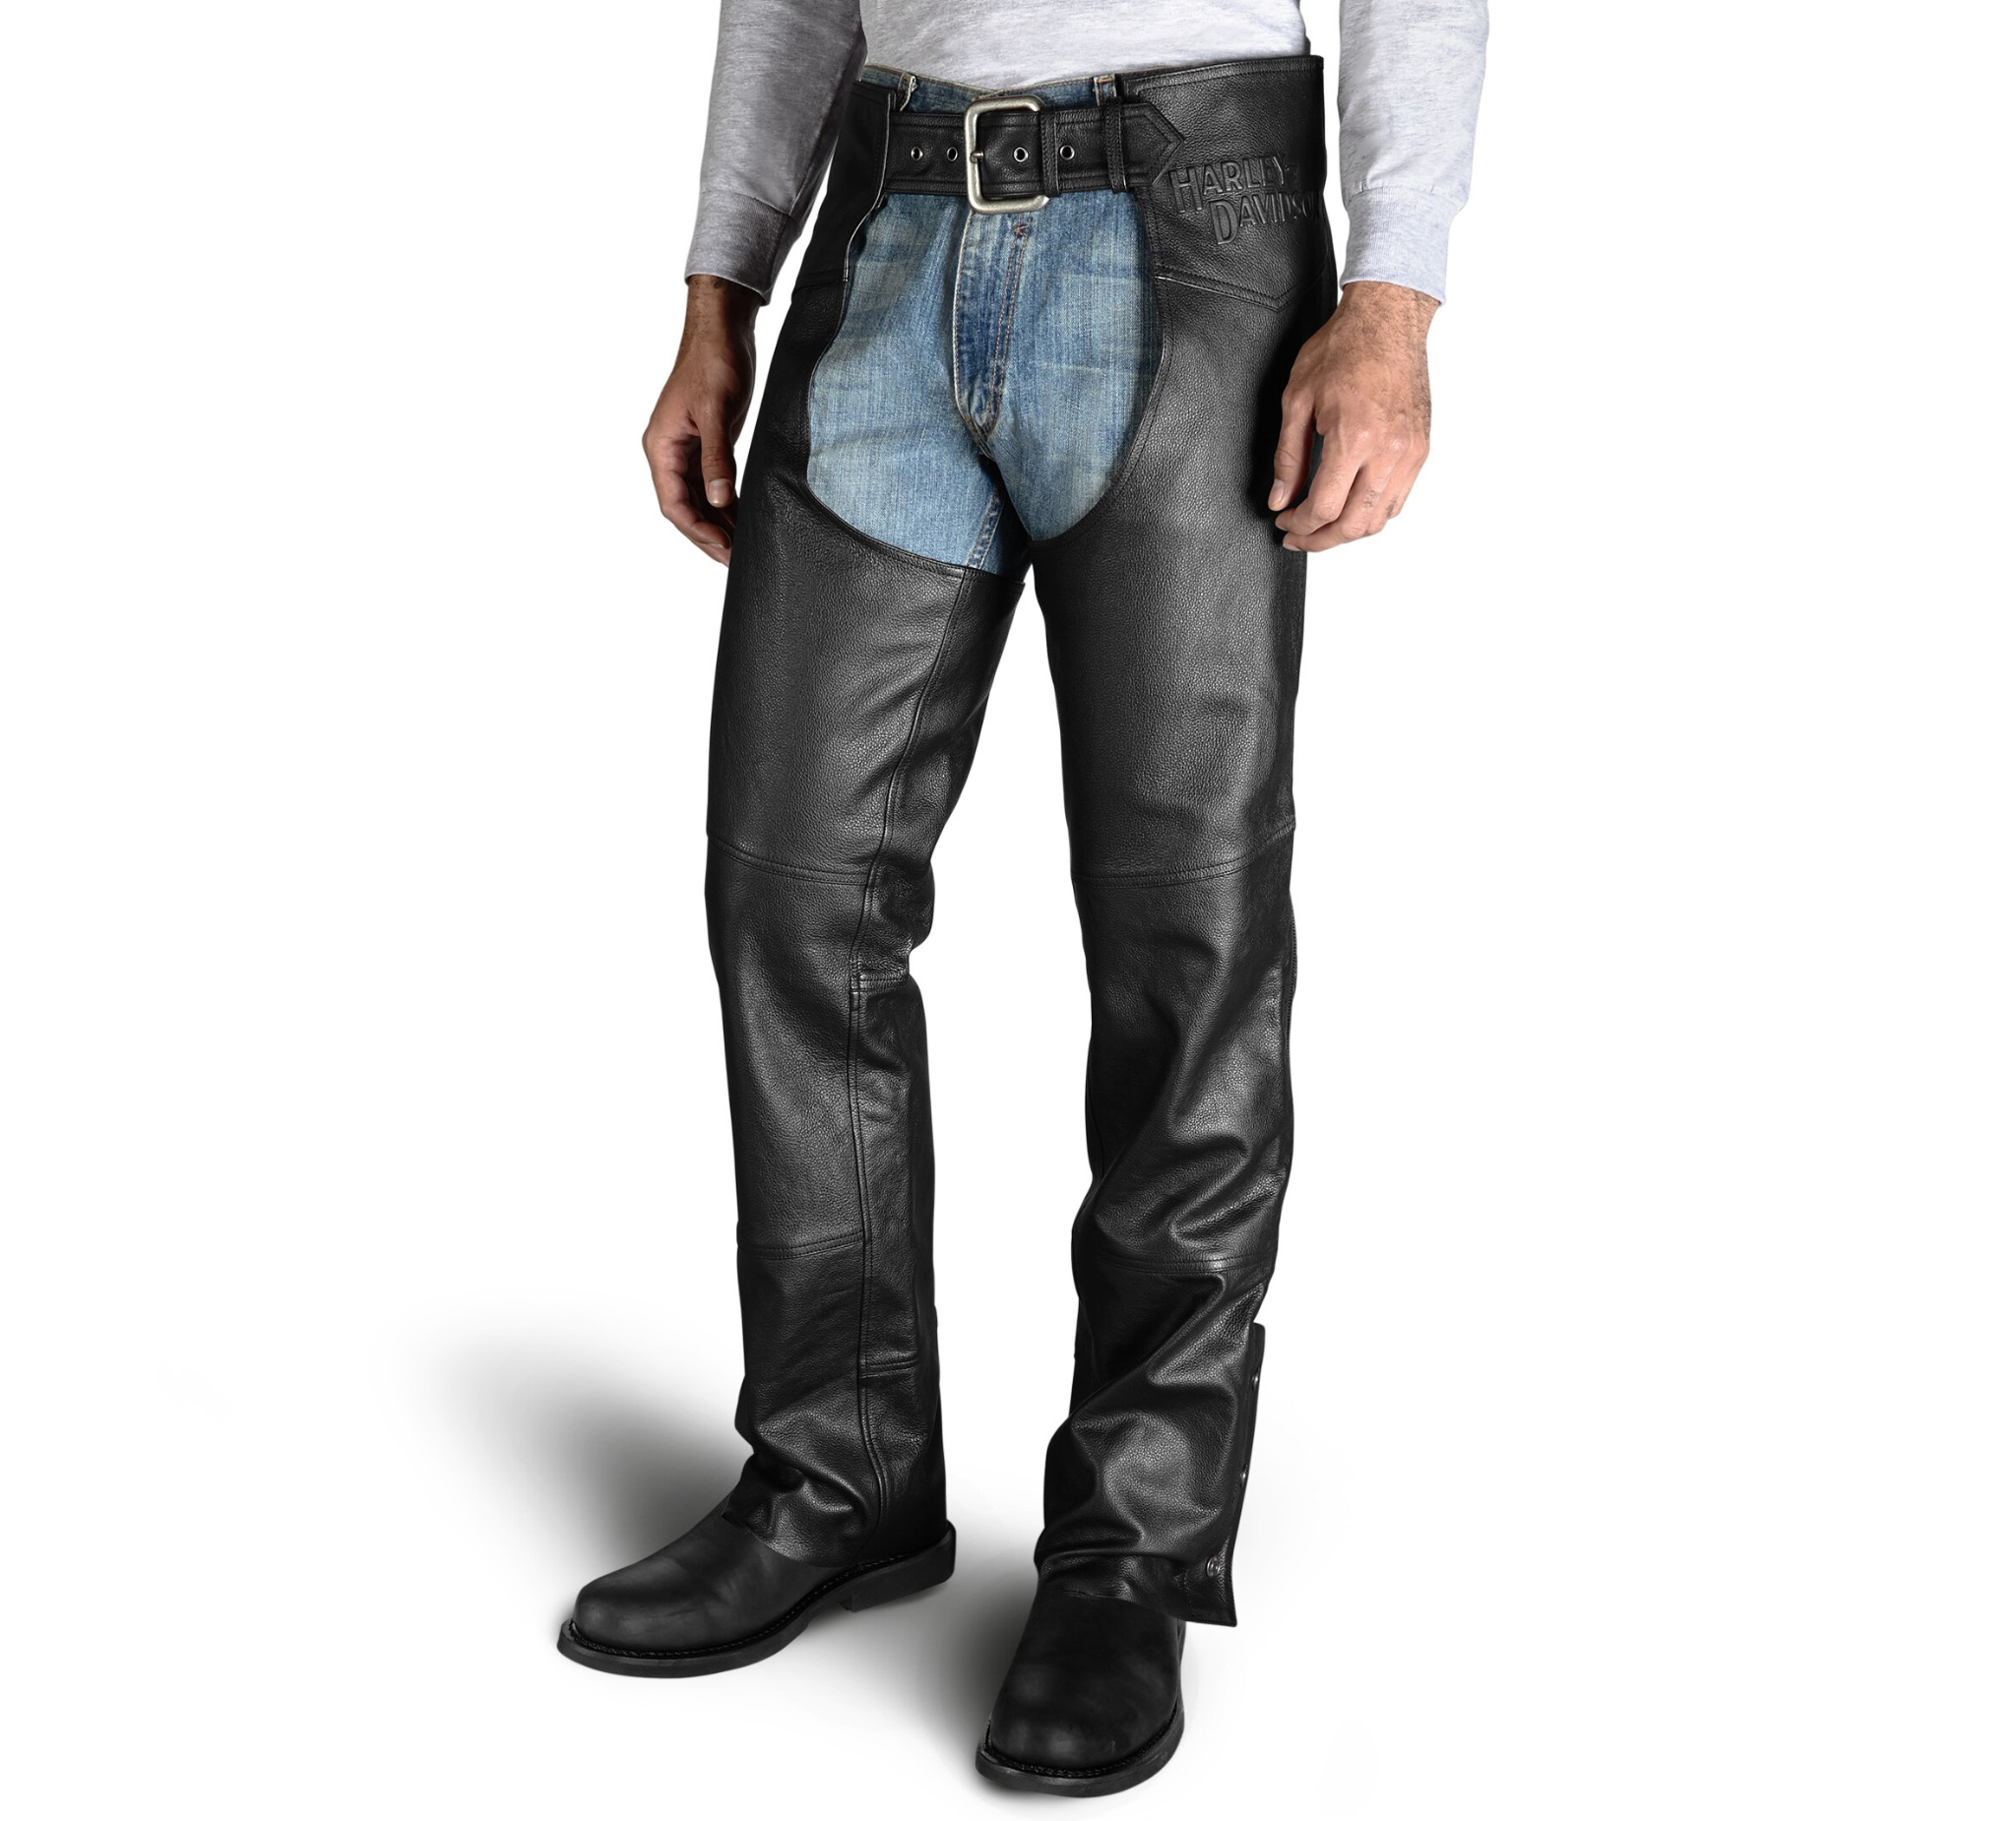 Leather Jeans - Garageland